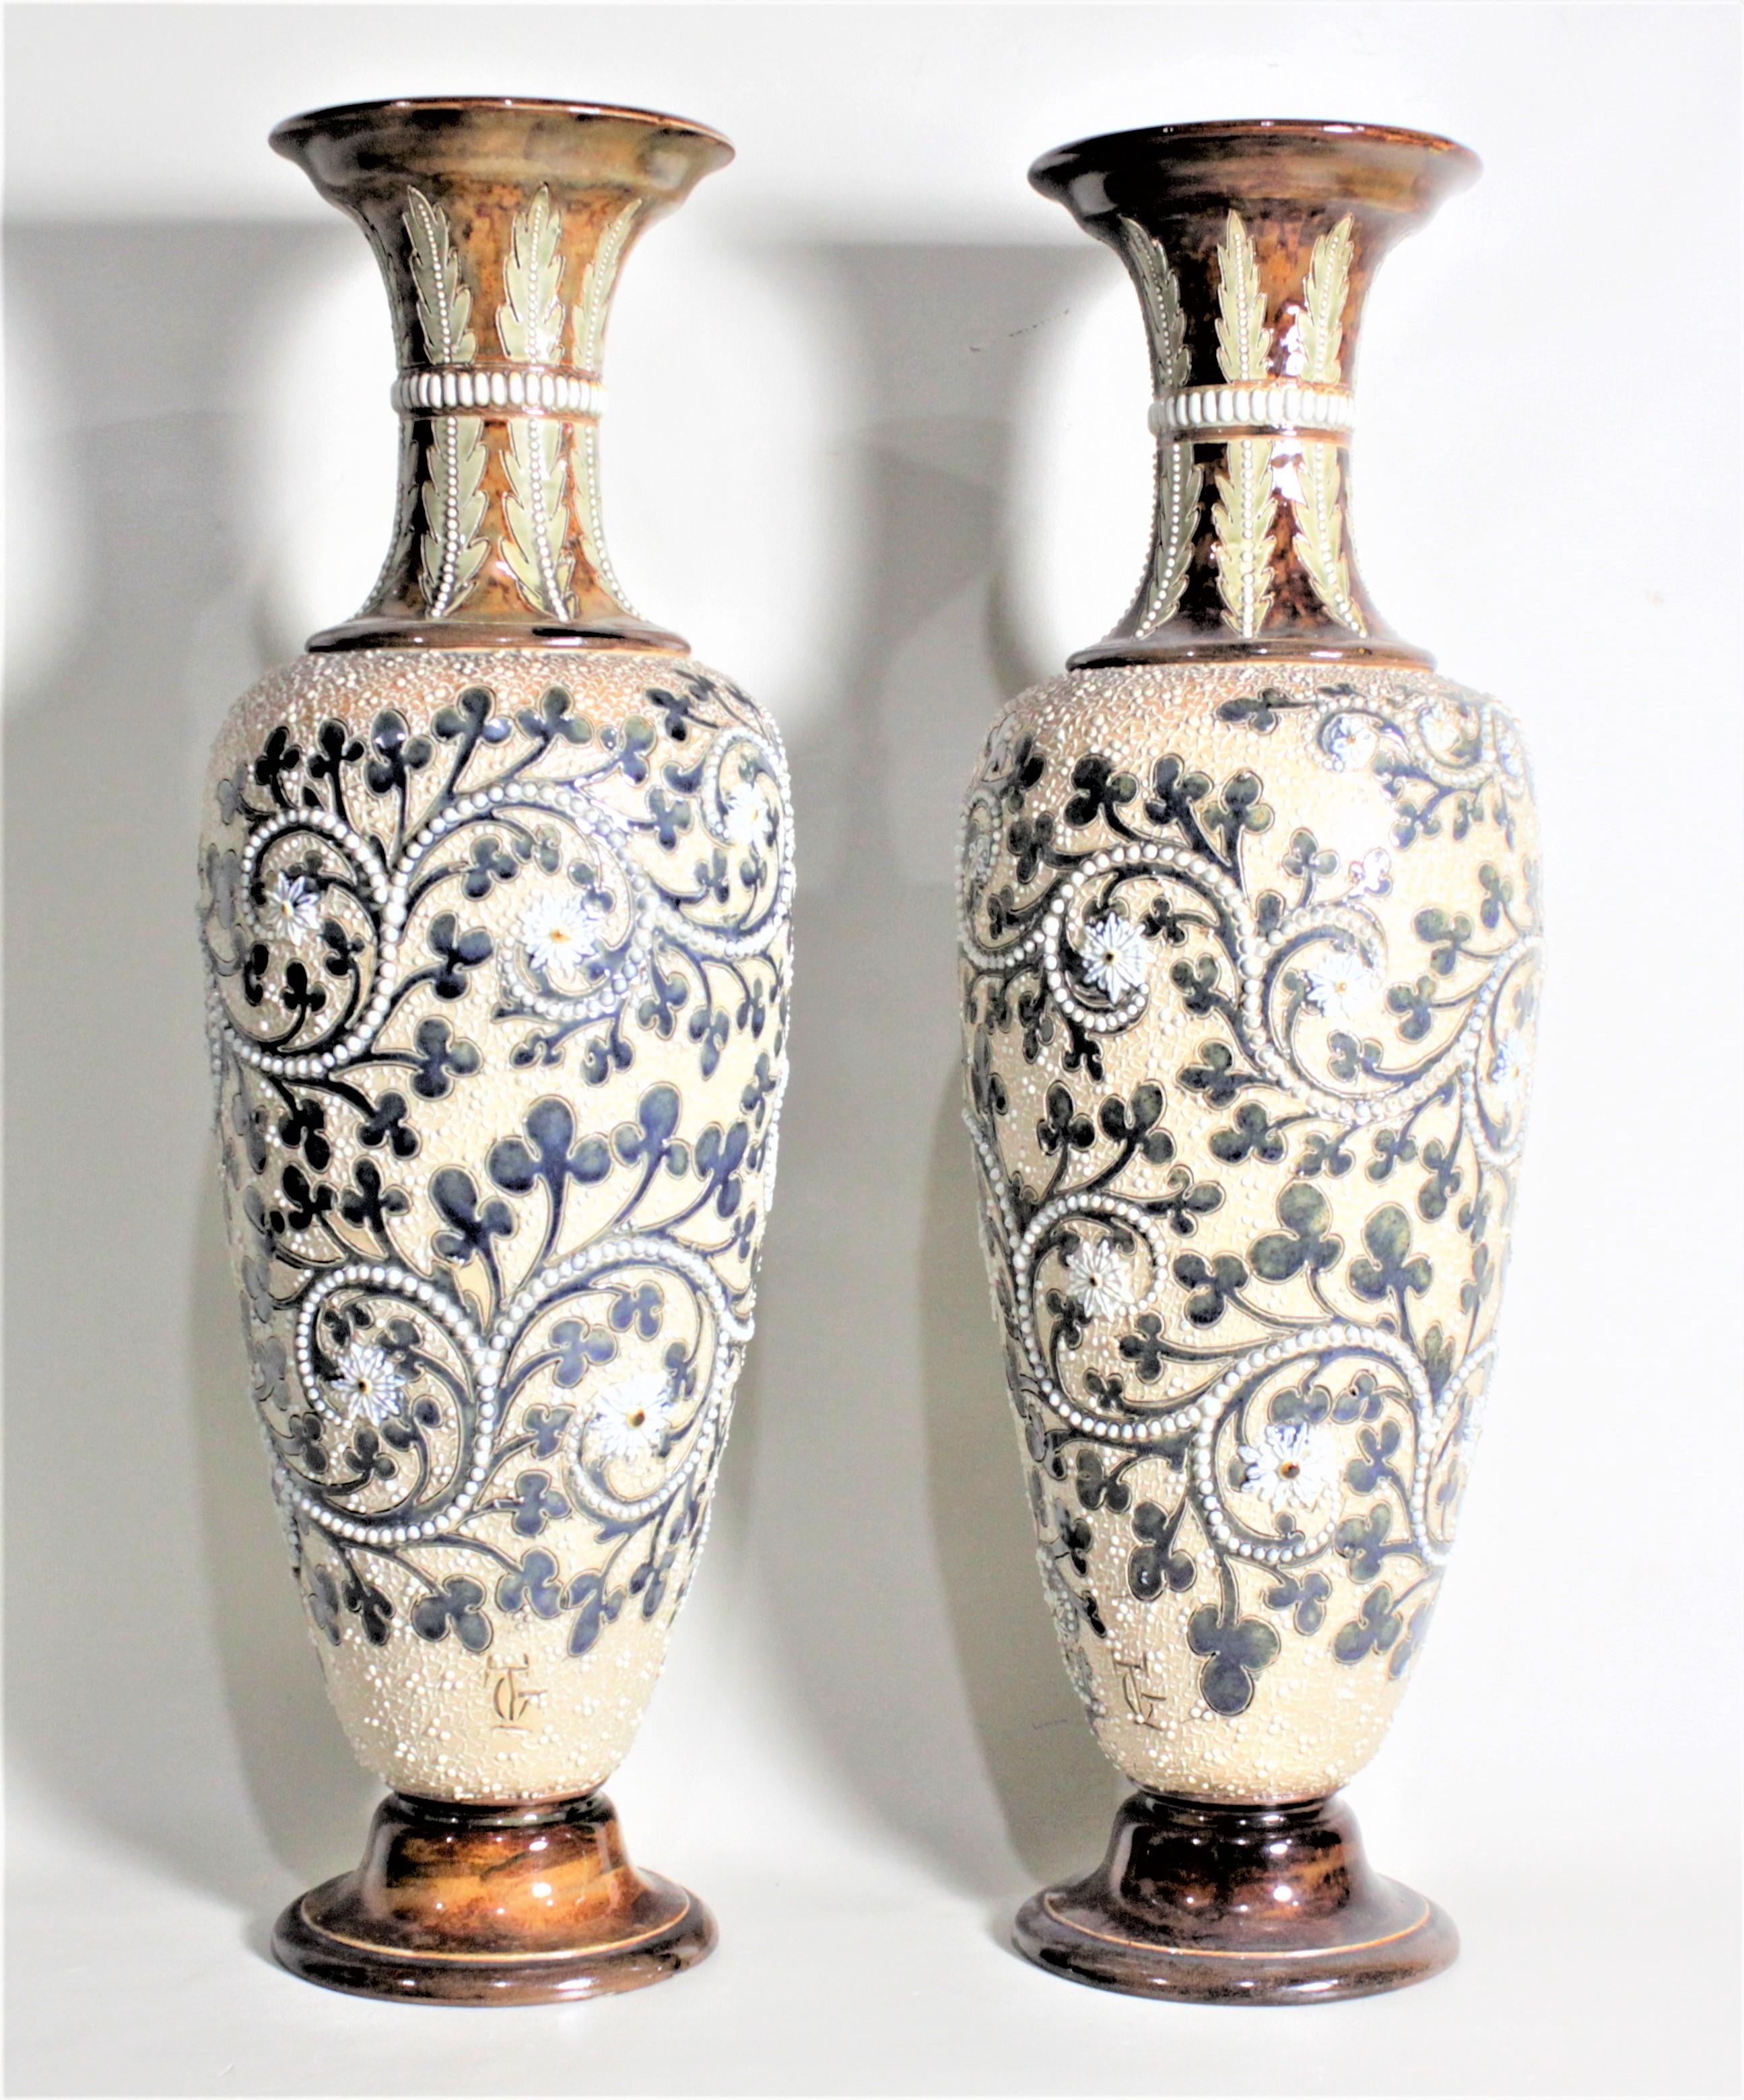 Dieses Paar antiker Steingutvasen wurde von dem berühmten Töpfer George Tinworth für die Doulton Lambeth Fabrik in England um 1880 im viktorianischen Stil hergestellt. Die Vasen sind mit einem tiefen cremefarbenen Grund mit aufwendigen Perlen